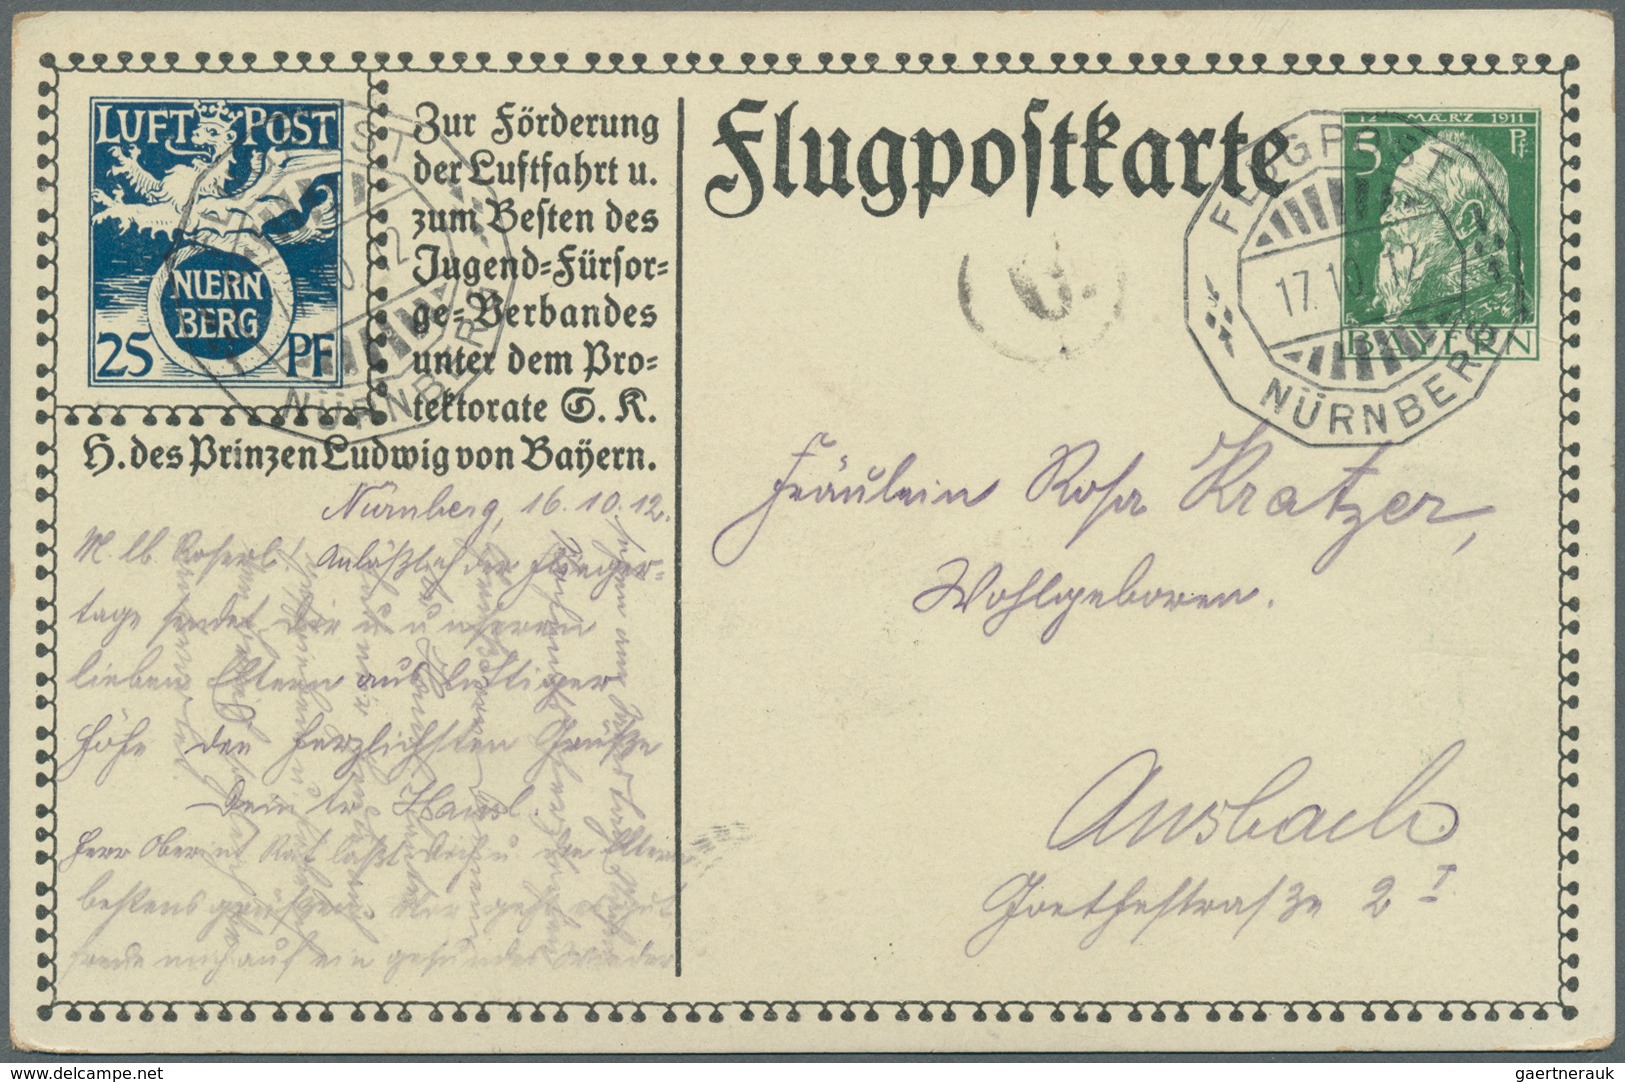 31206 Bayern - Marken und Briefe: 1887/1920, Partie von 37 Briefen, Karten und gebrauchten Ganzsachen, dab